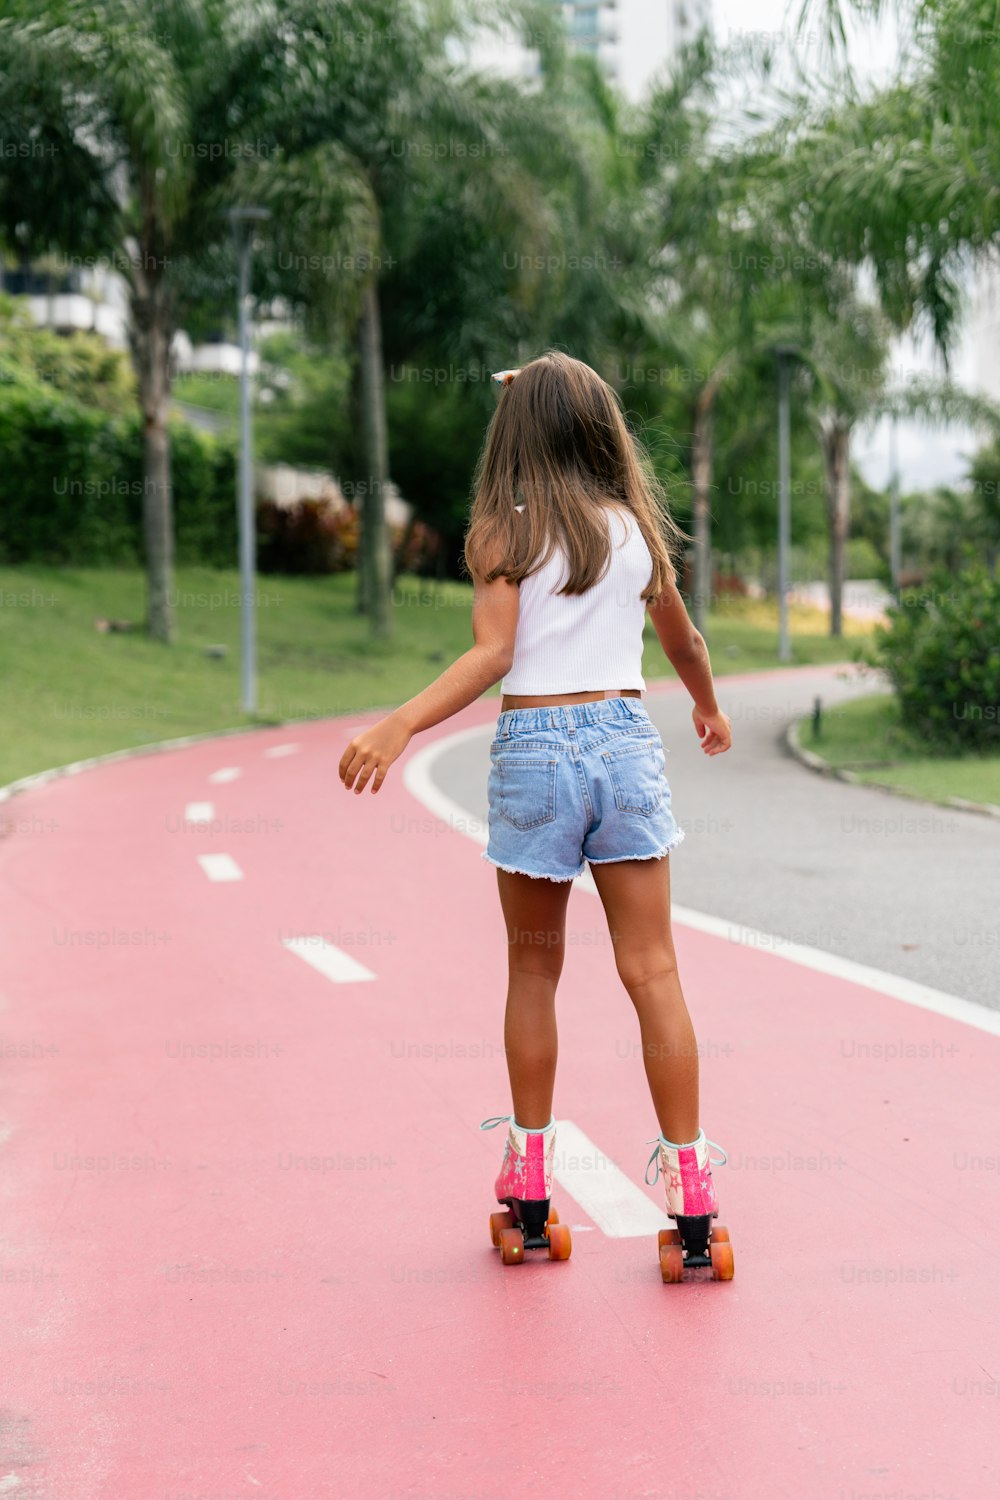 une petite fille sur une planche à roulettes sur une route rose